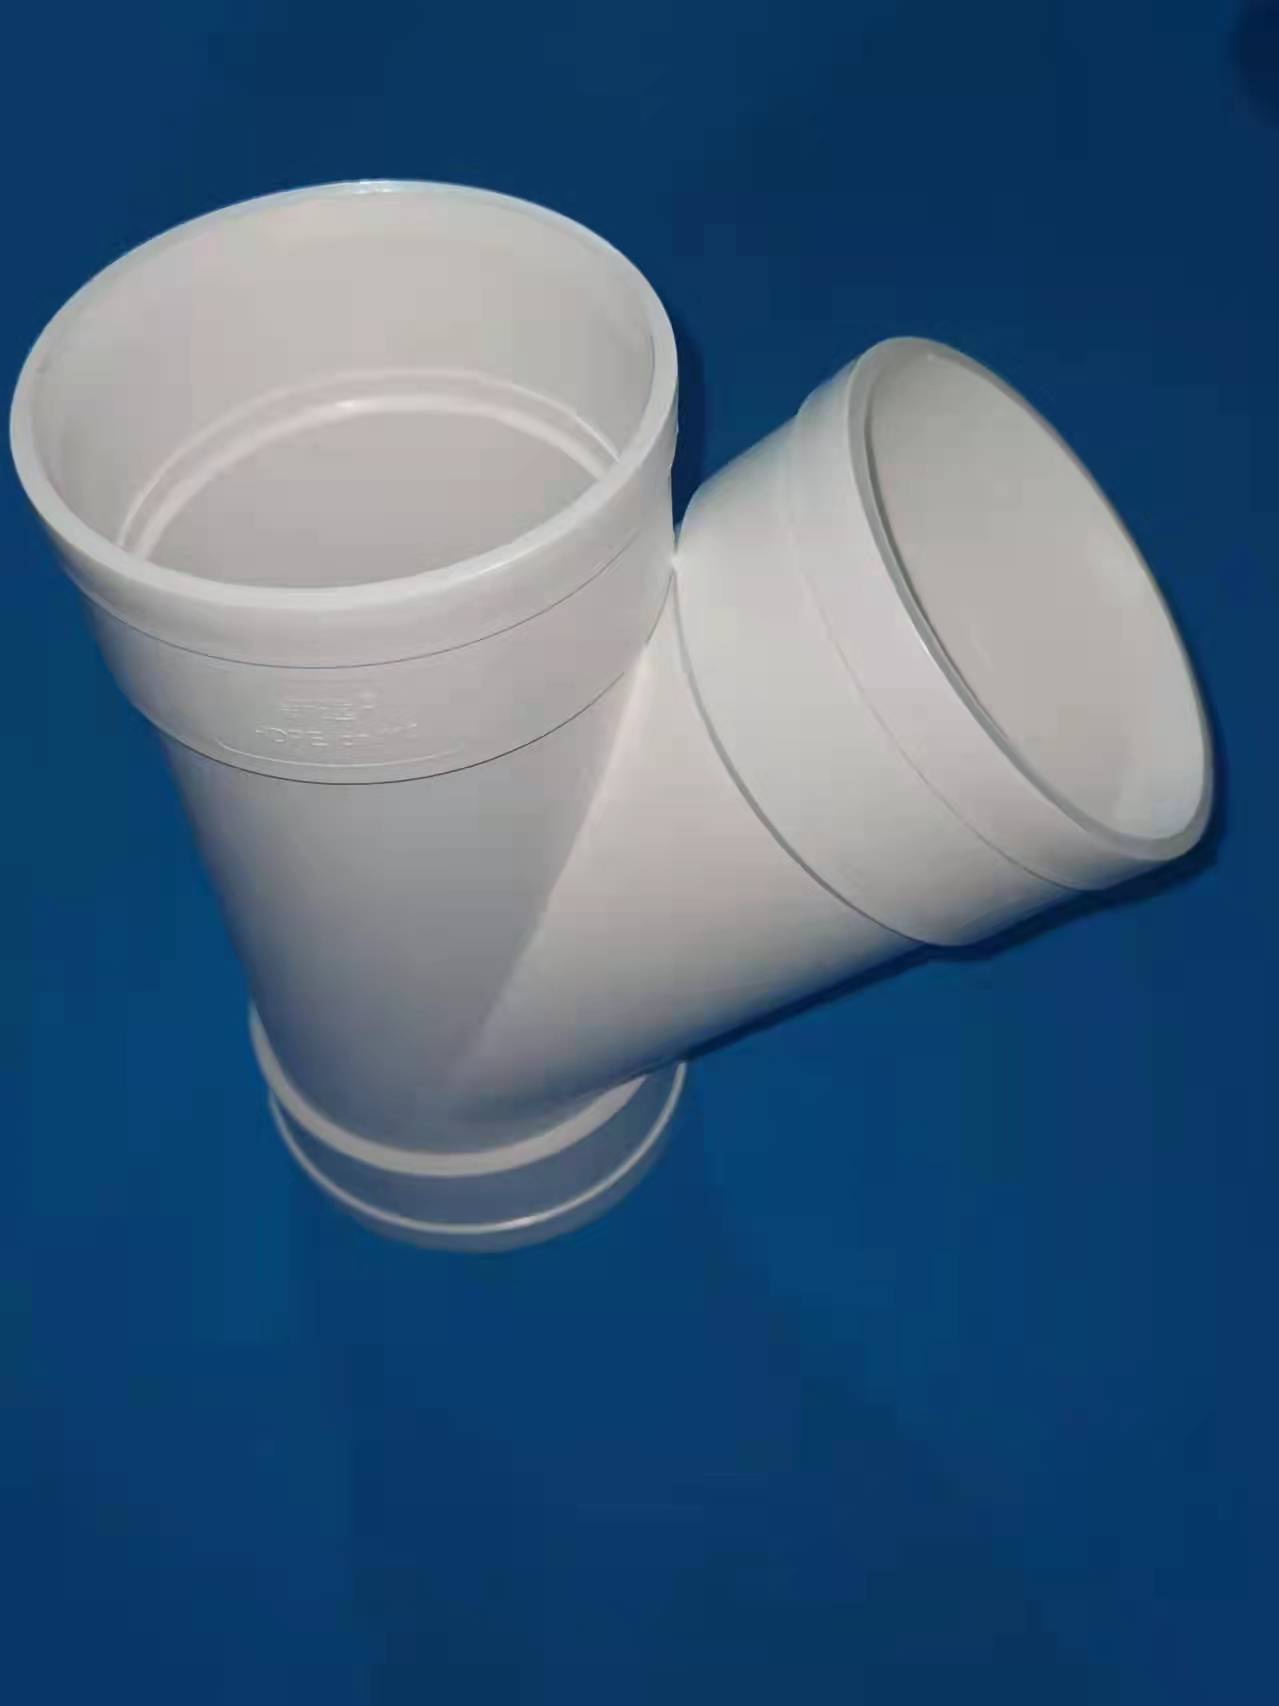 高密度聚乙烯（HDPE）排水管道  强度高耐磨性好